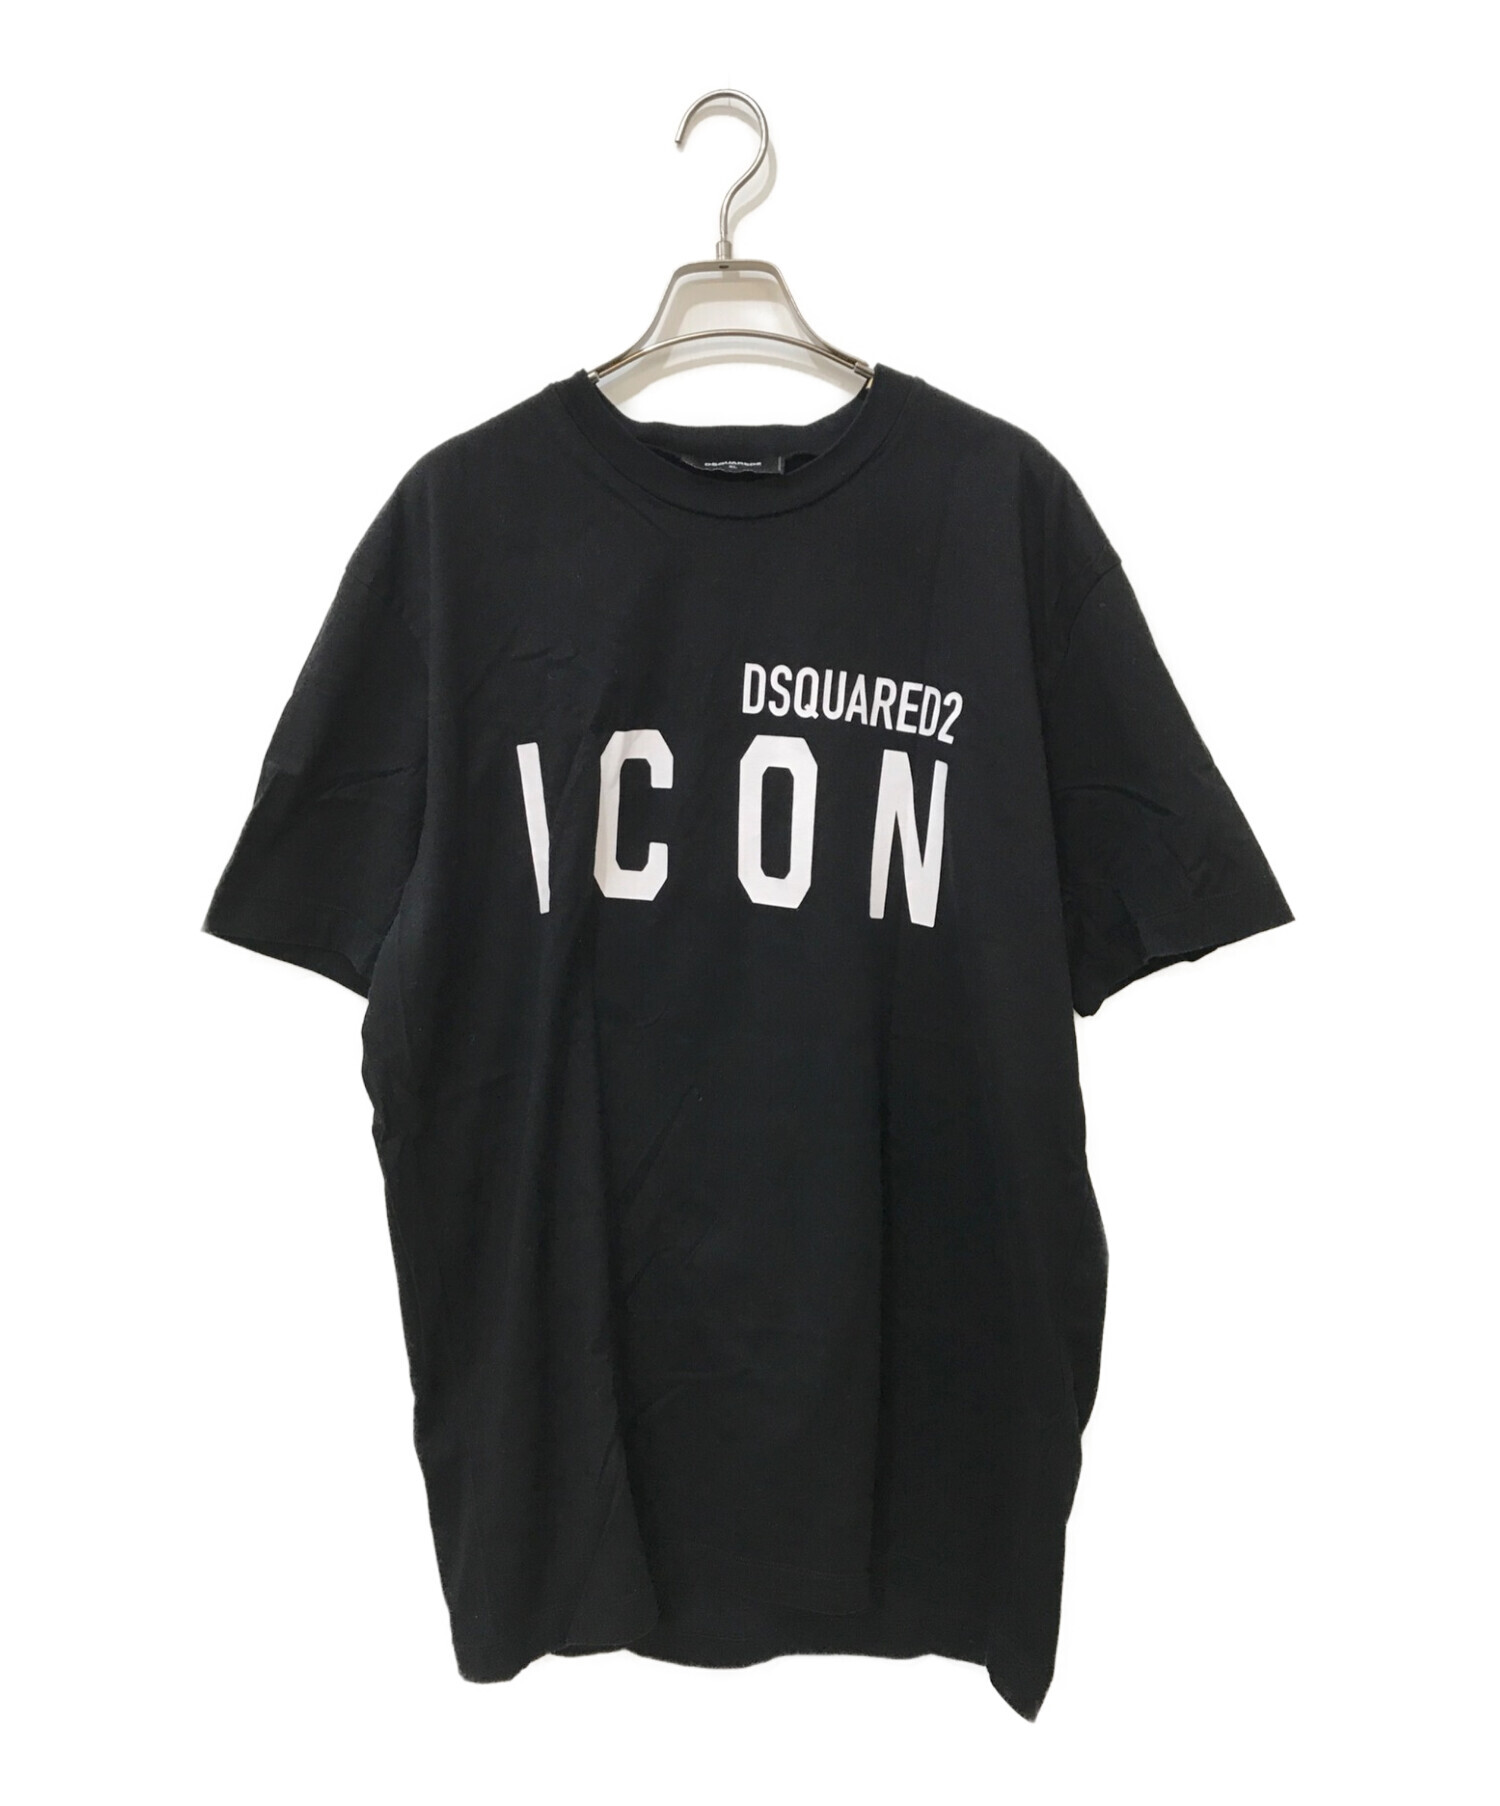 ディースクエアードDSQUARED2 ICONロゴTシャツ - Tシャツ